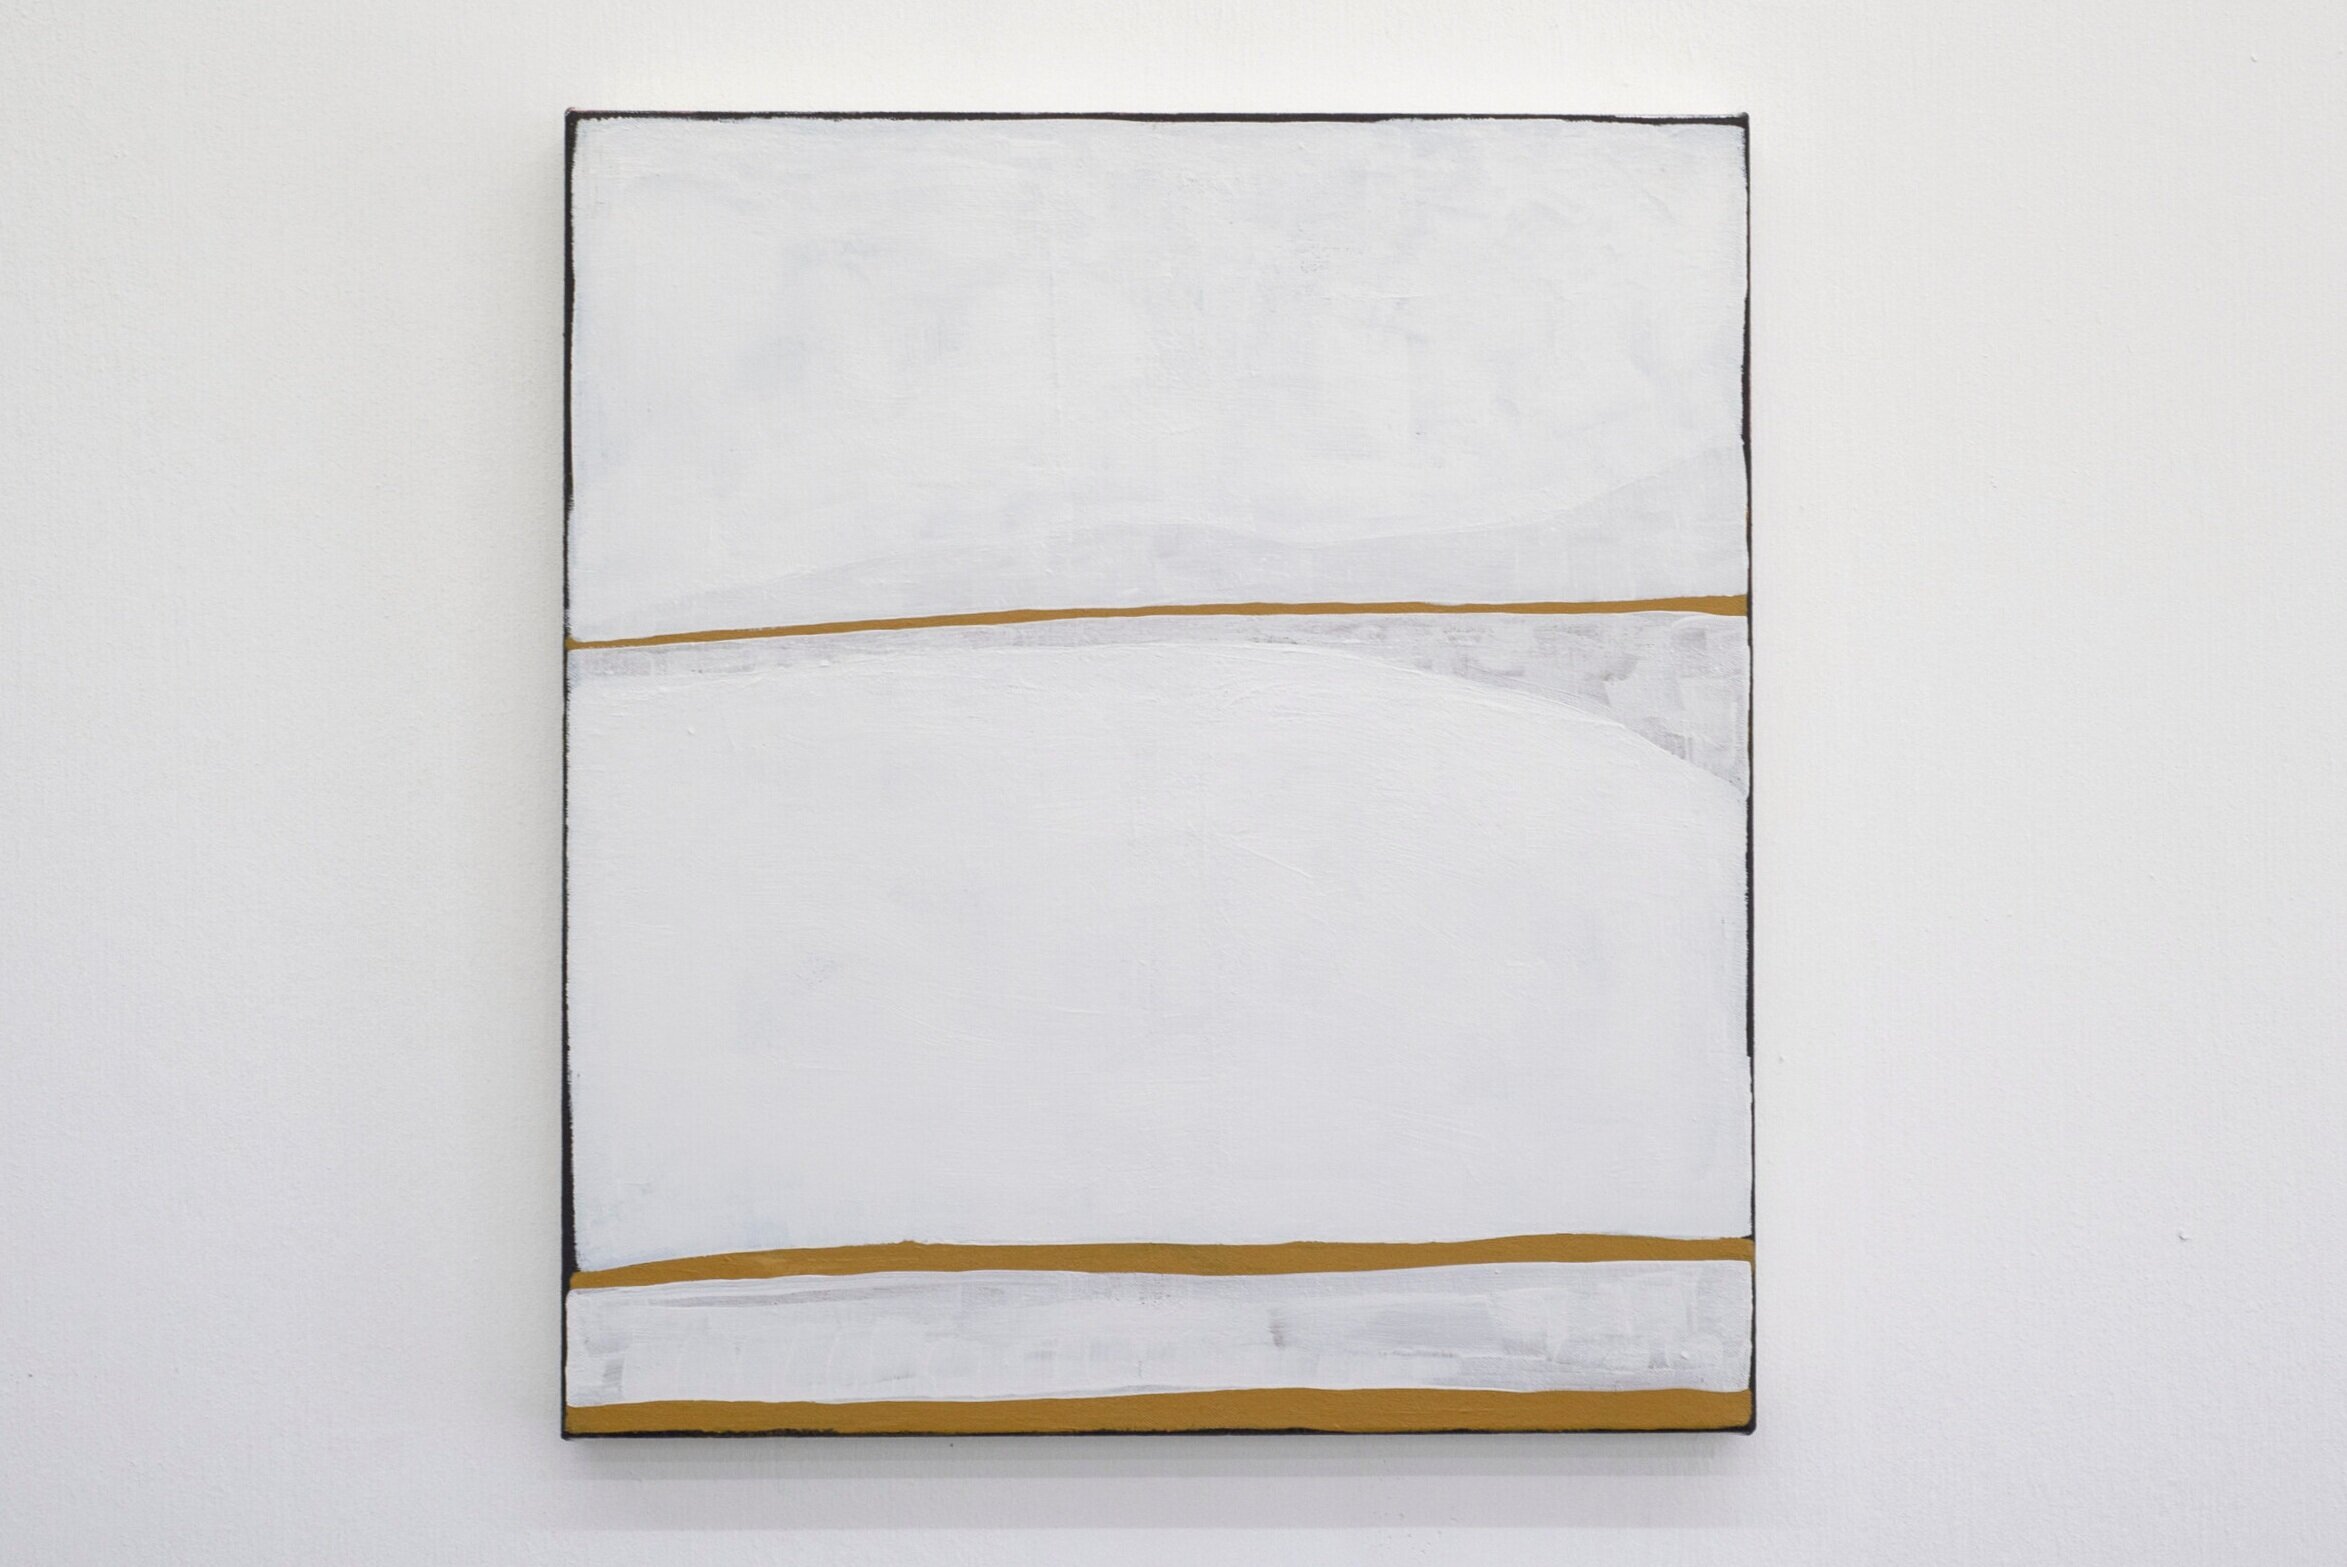 Three lines, three horizons, 2020, 51 x 41cm, #1600